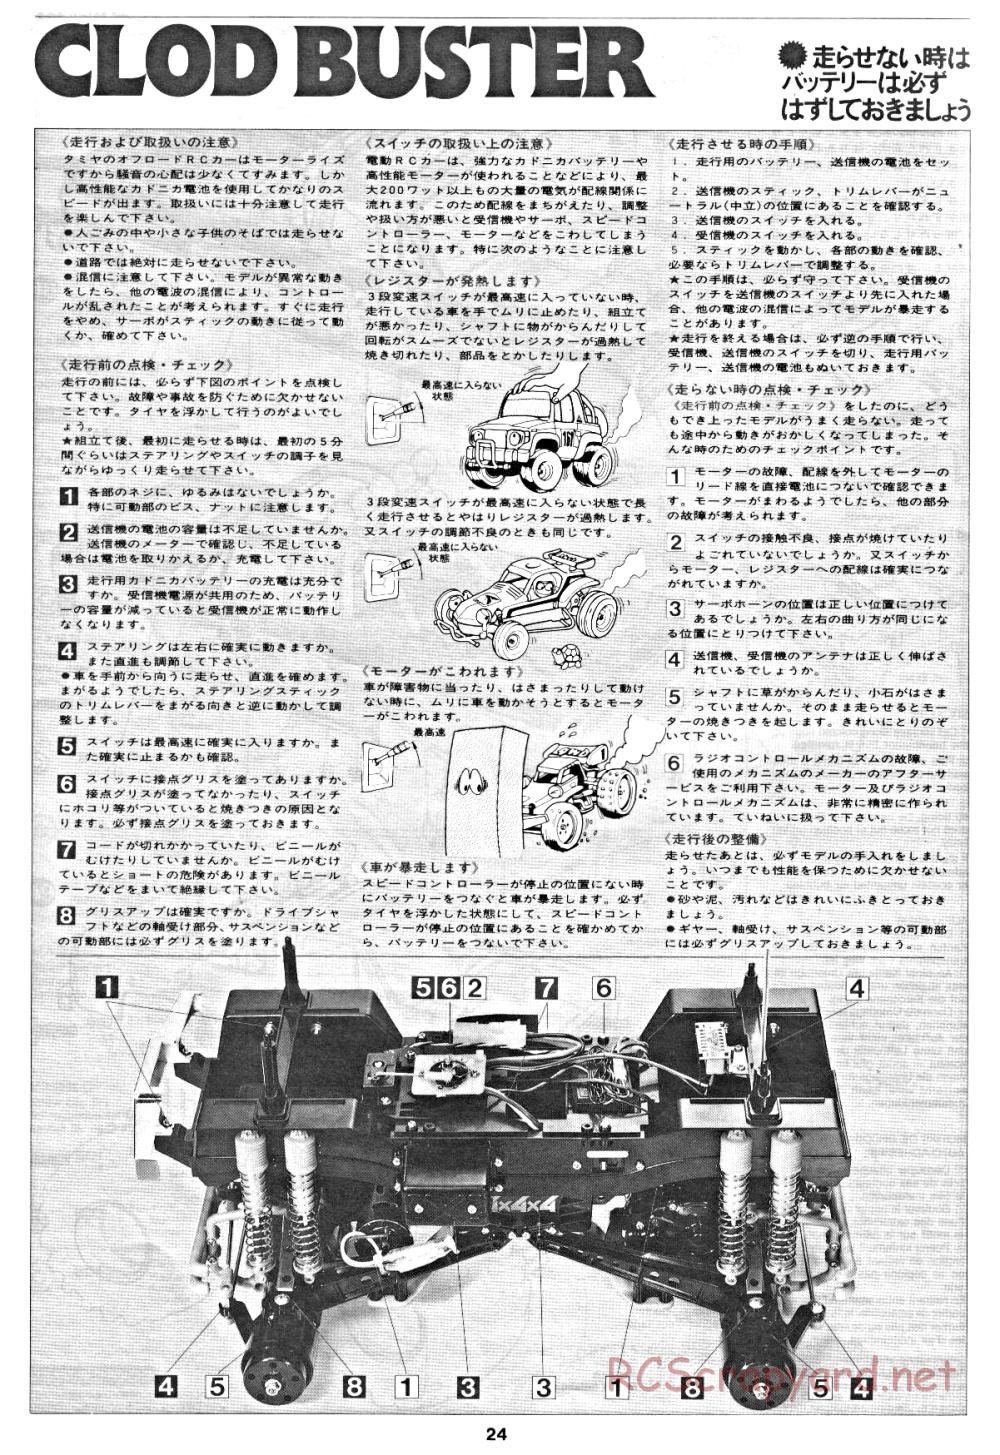 Tamiya - Clod Buster - 58065 - Manual - Page 24